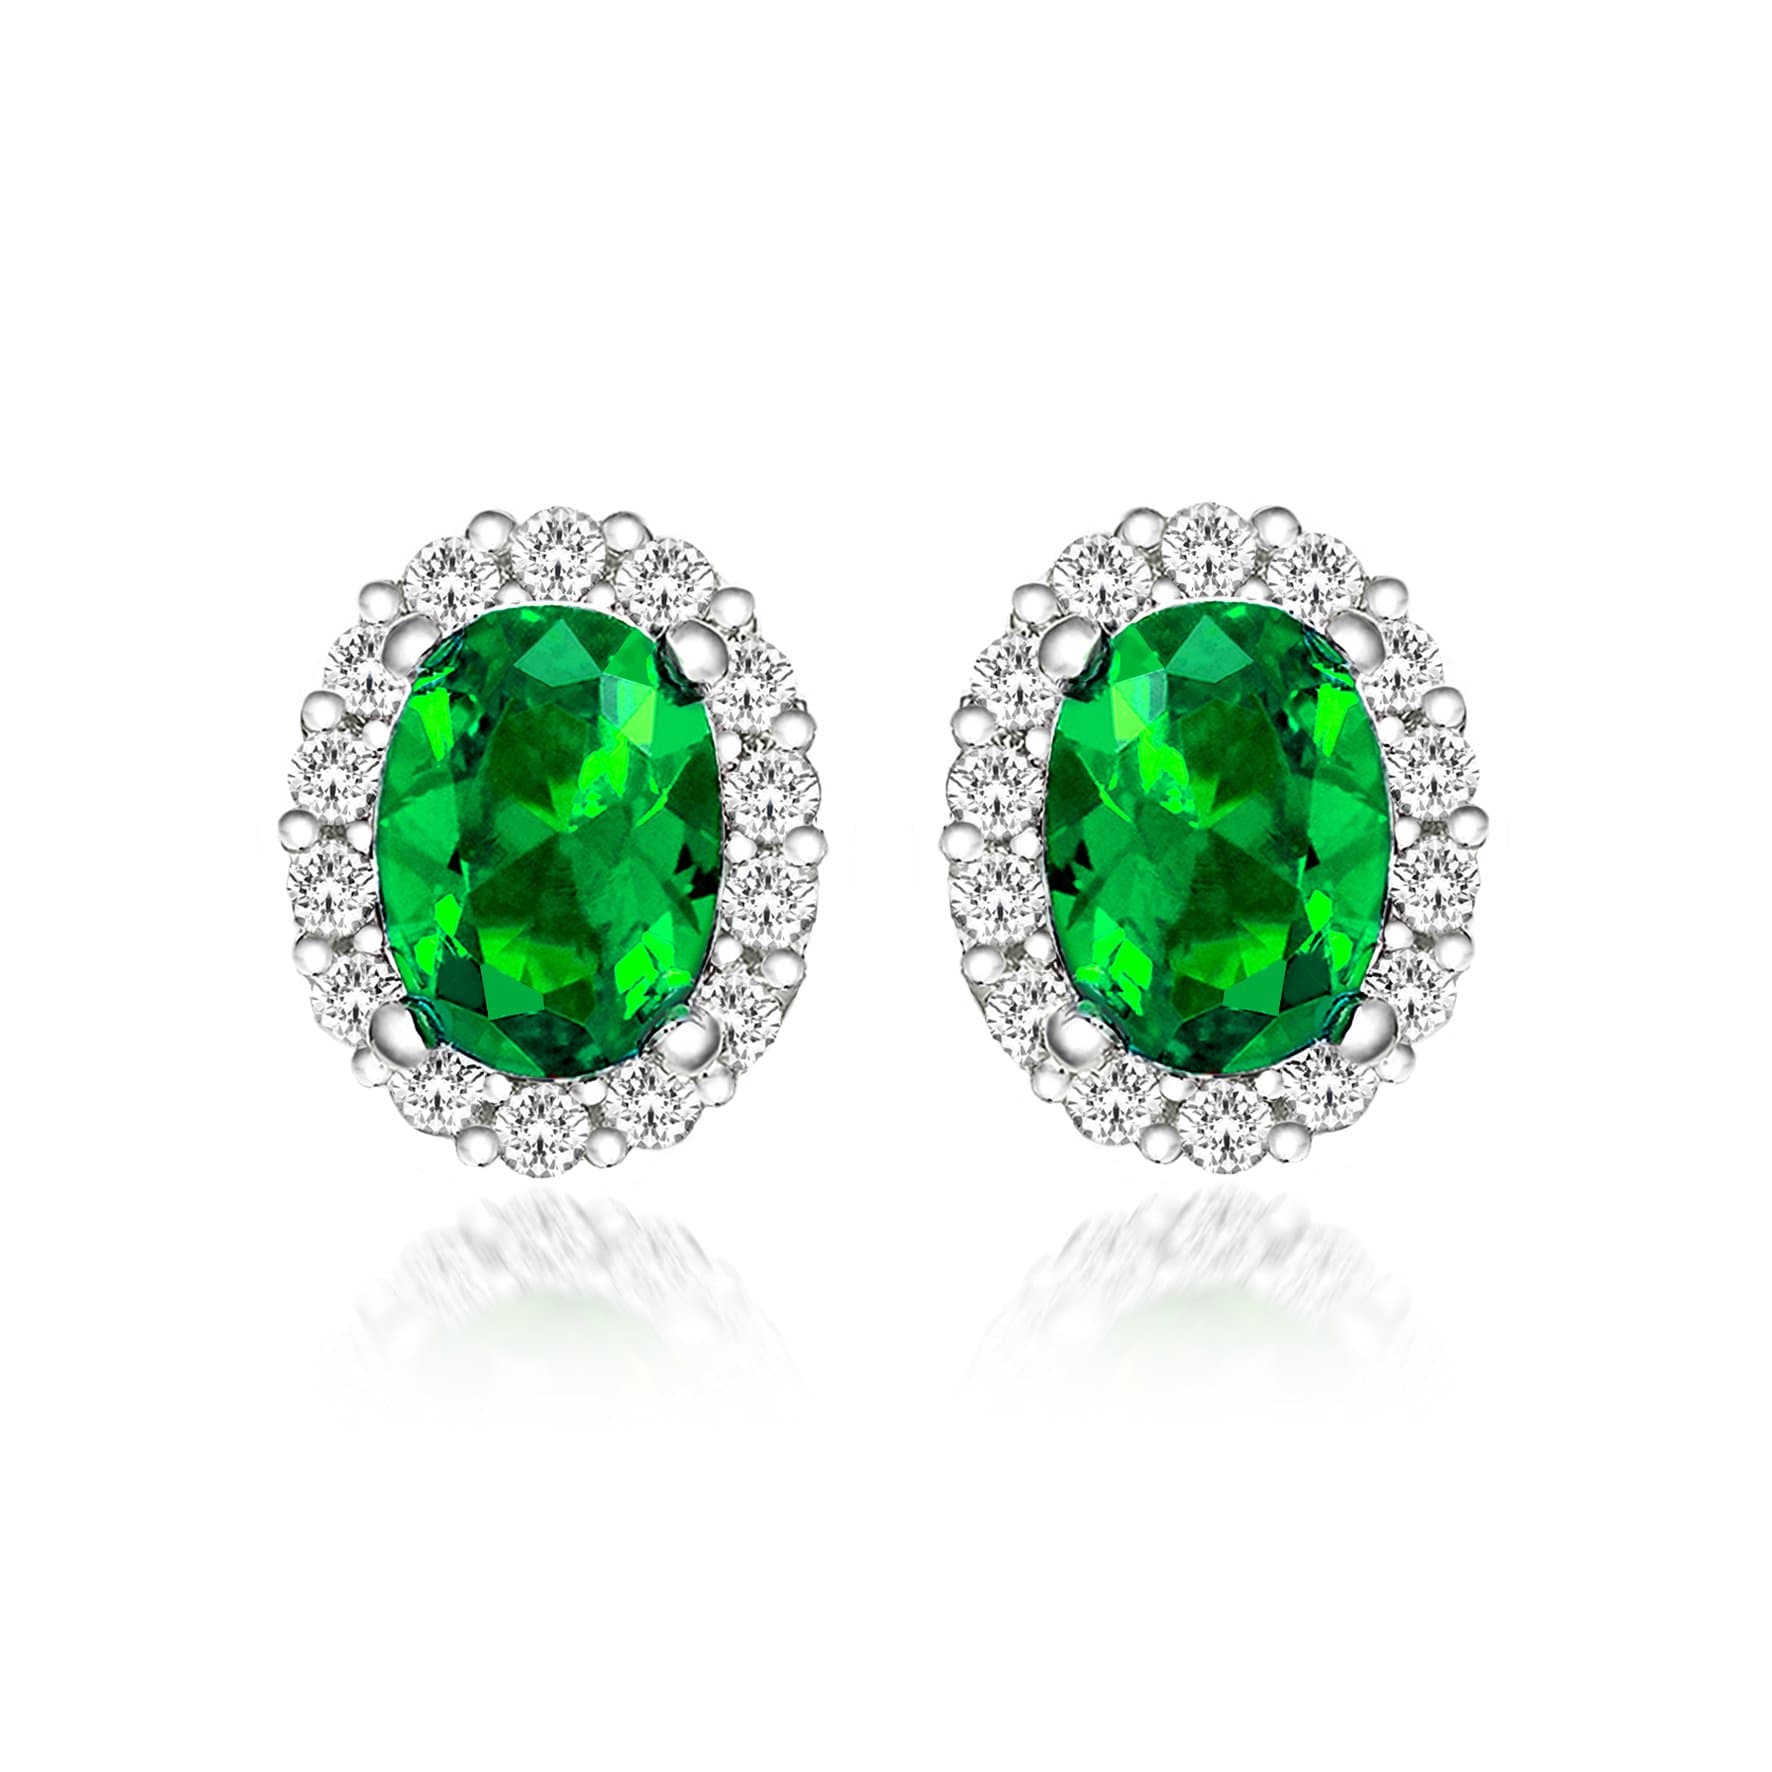 Lynora Jewellery Earring Sterling Silver / Emerald Opulence Studs Sterling Silver & Emerald Stone